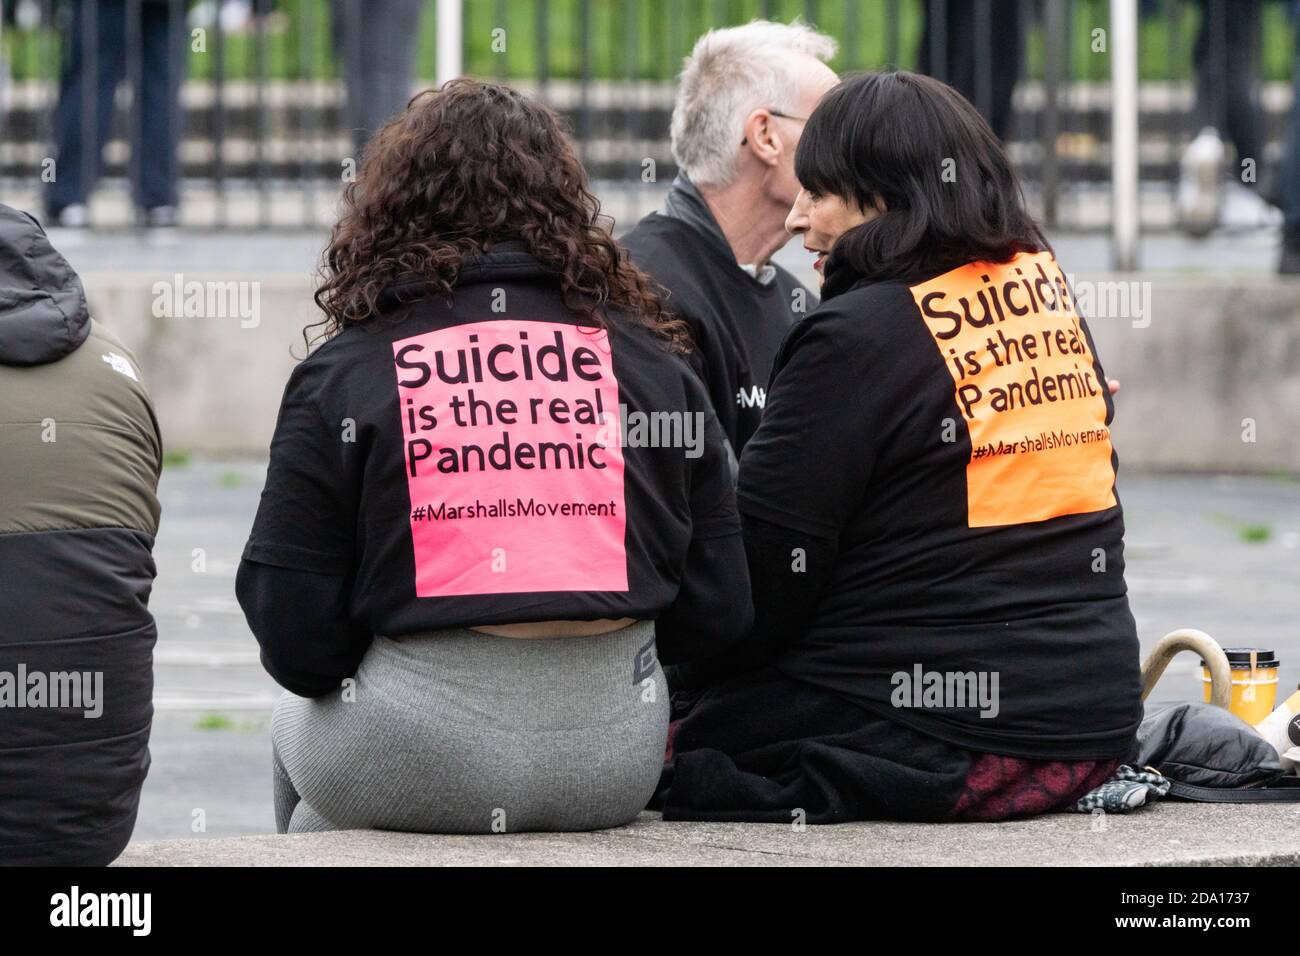 Le suicide est la véritable pandémie, Marshalls Movement, vu lors de la manifestation anti-verrouillage Manchester 08-11-2020, Covid, covid19, 2020 Banque D'Images